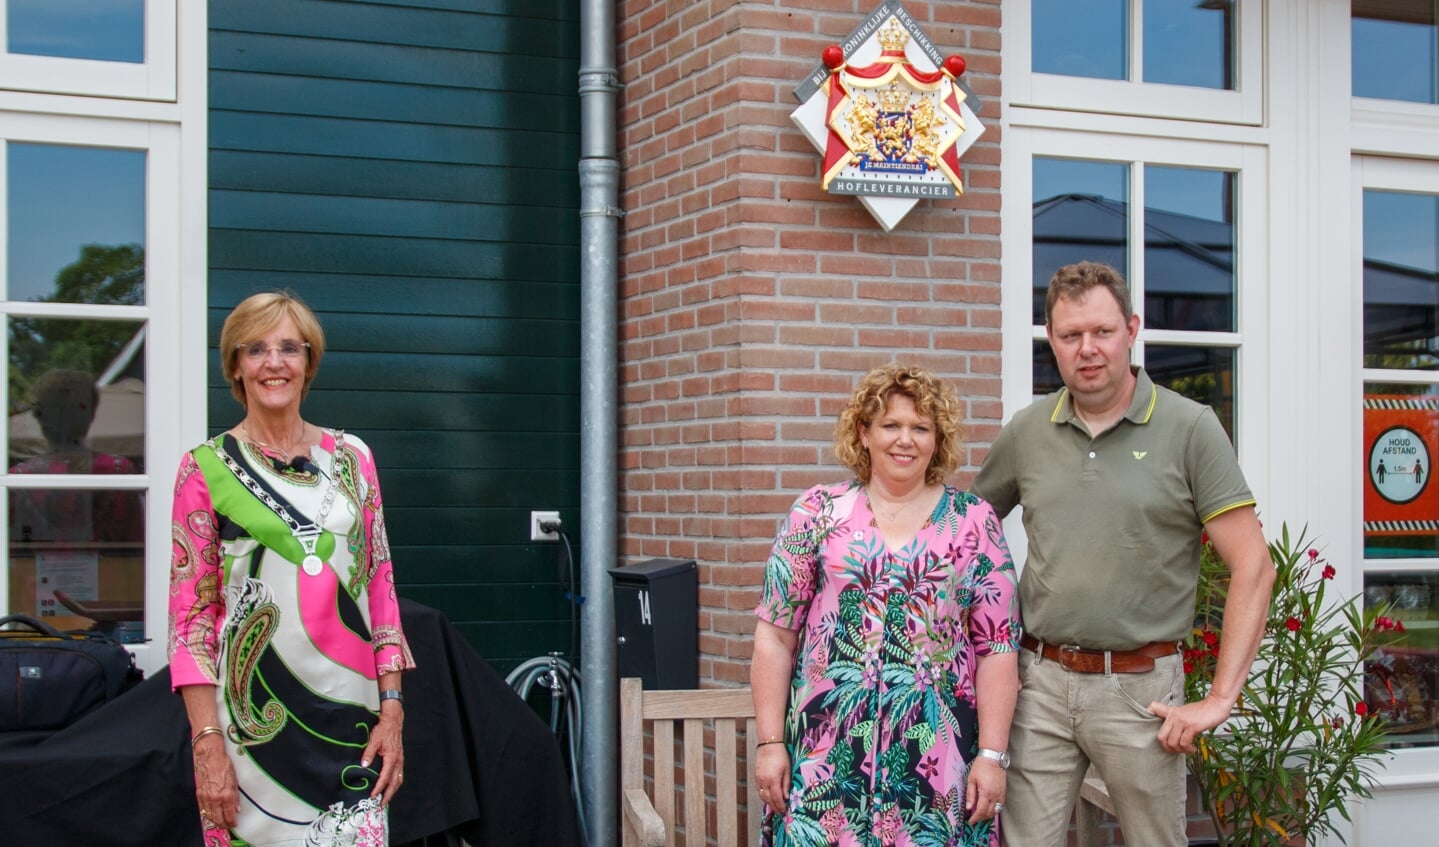 Burgemeester Bronsvoort en echtpaar Pijnappel bij het wapenschild. Foto: Marcel Houwer